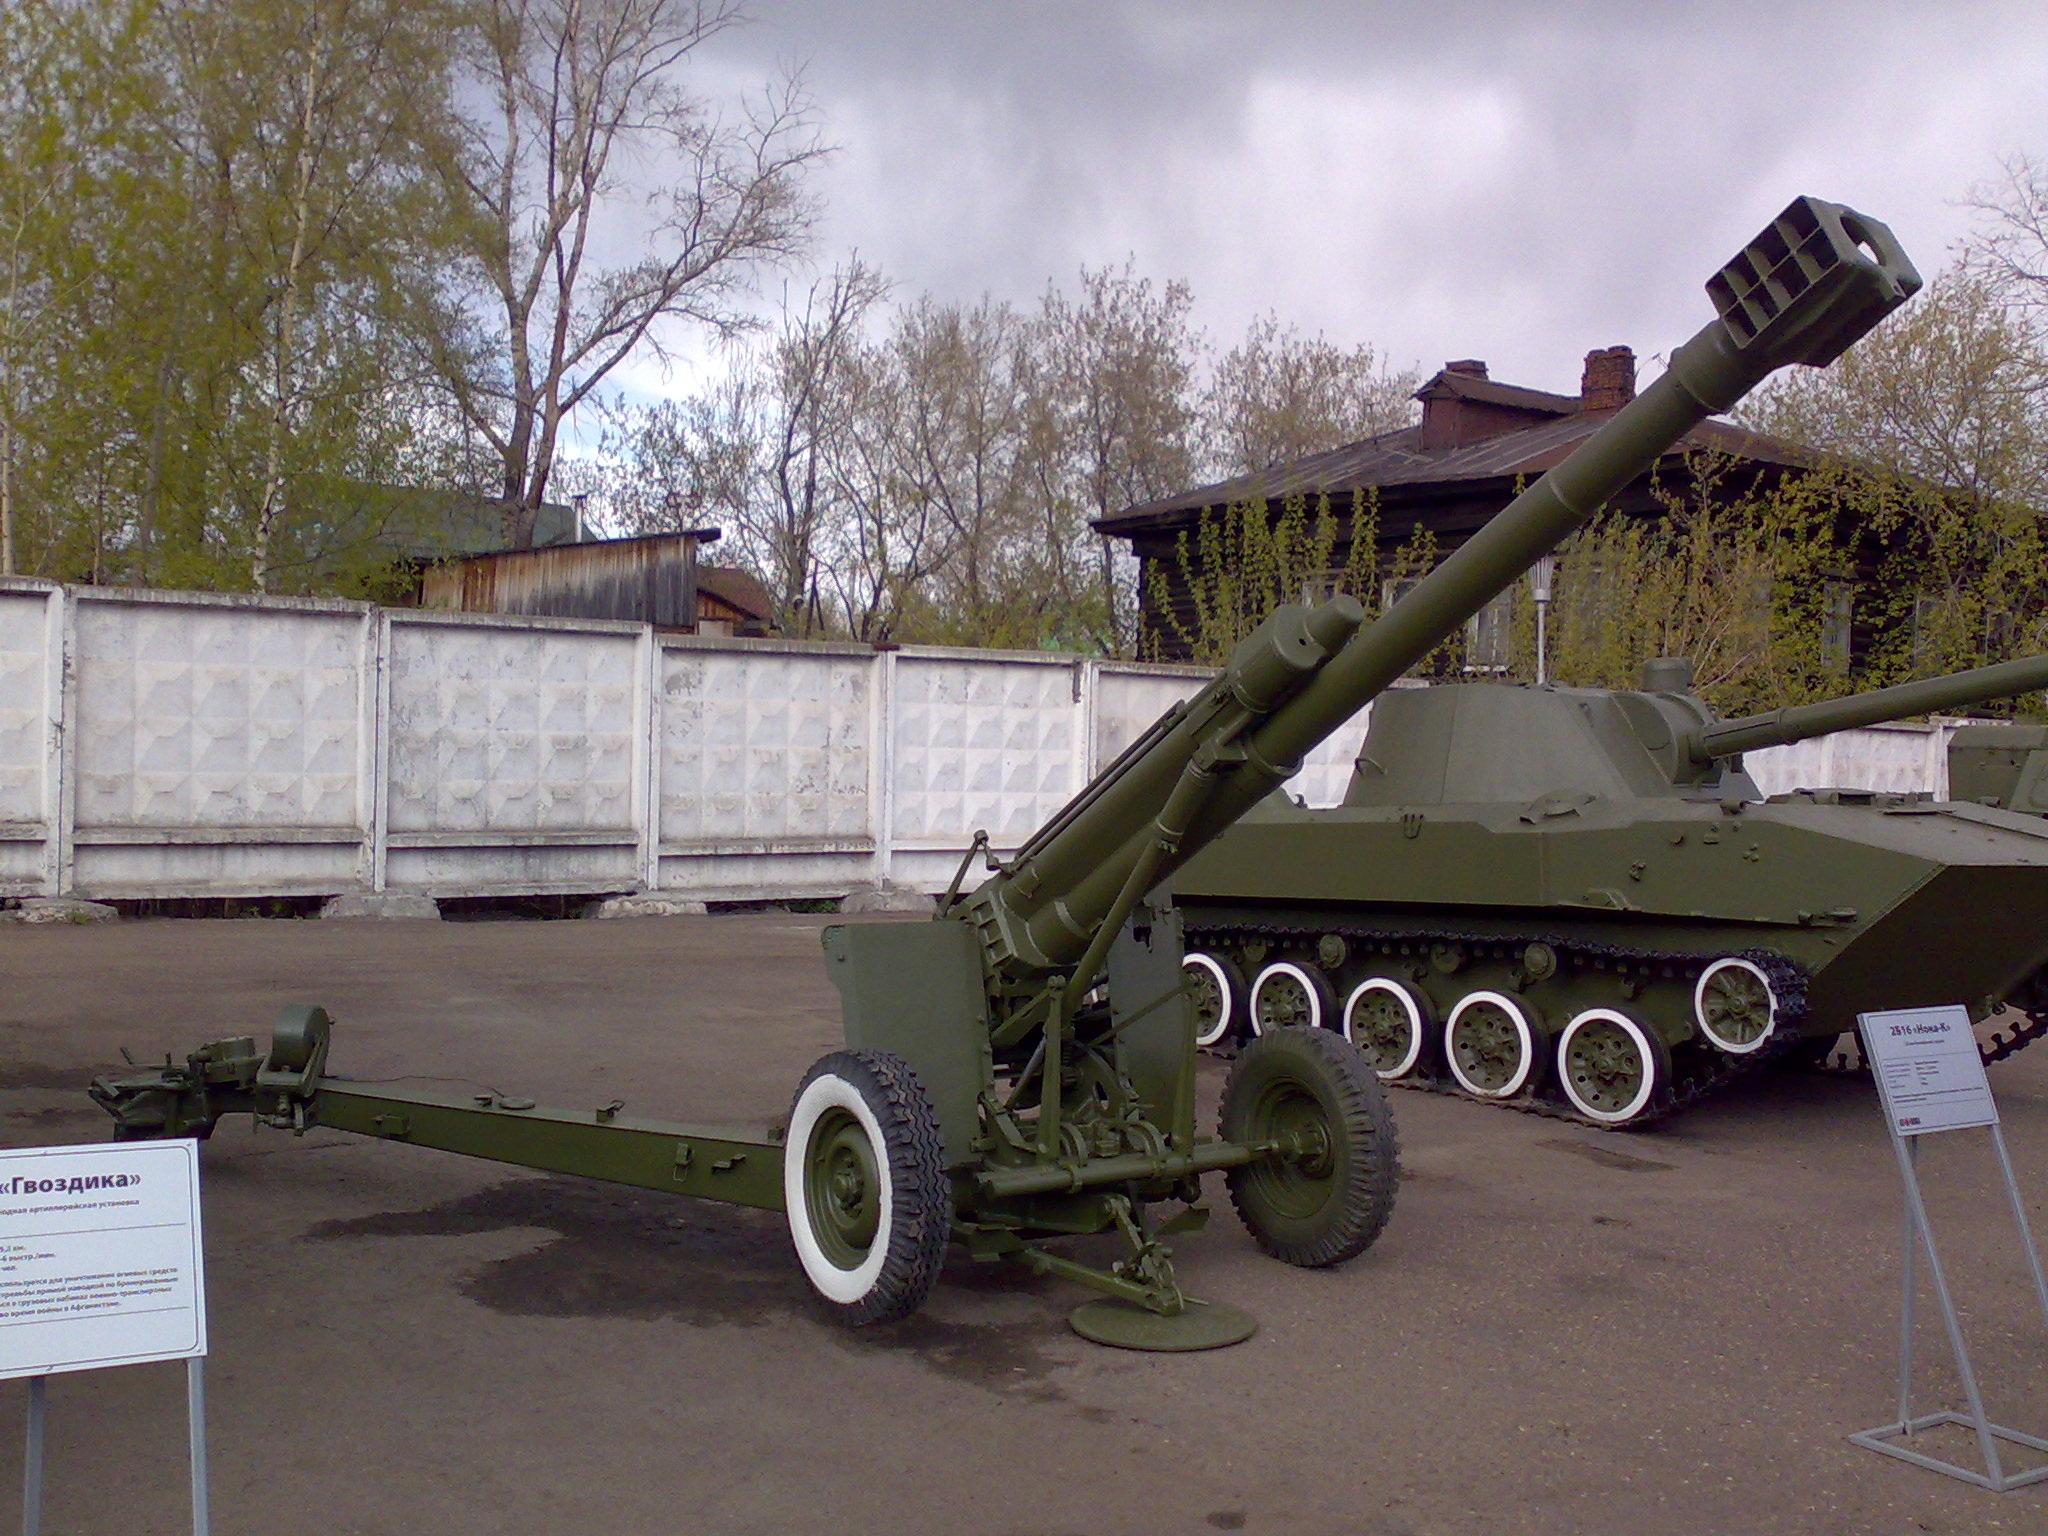 Siły Zbrojne Ukrainy pokazały w akcji rzadką haubicę Nona-K - w sumie wyprodukowano niecałe 200 takich dział